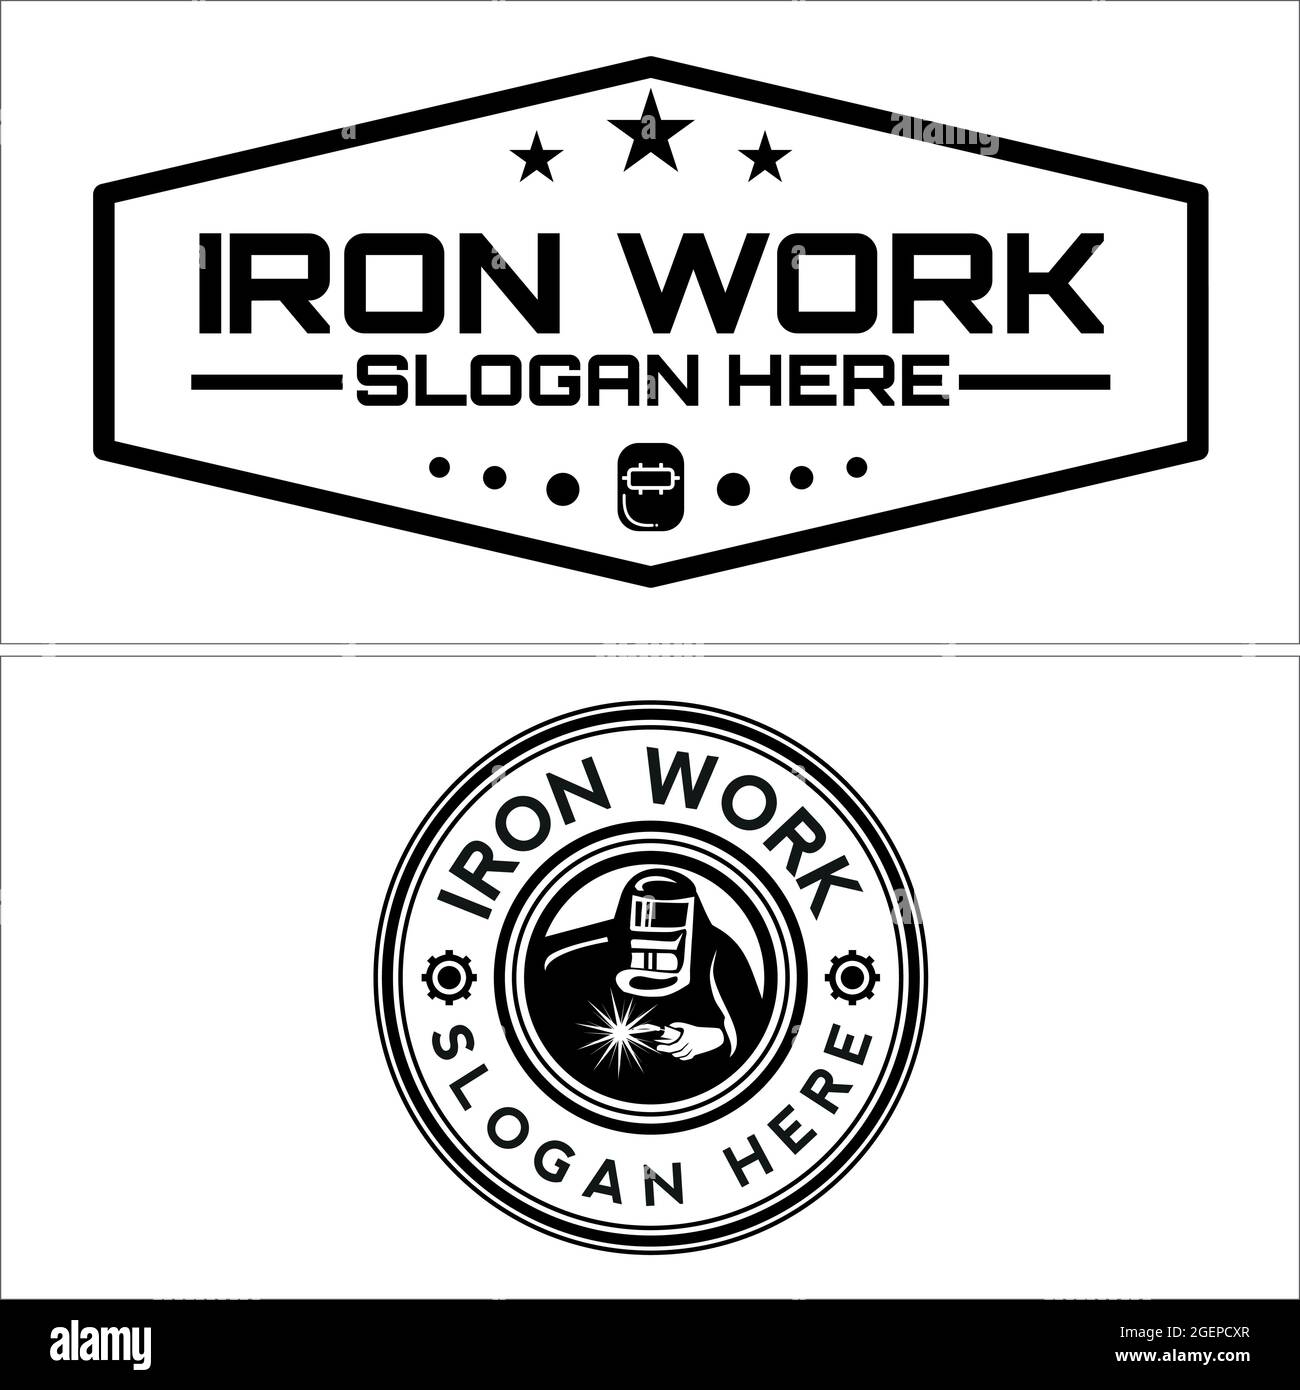 Industrial service welding logo design Stock Vector